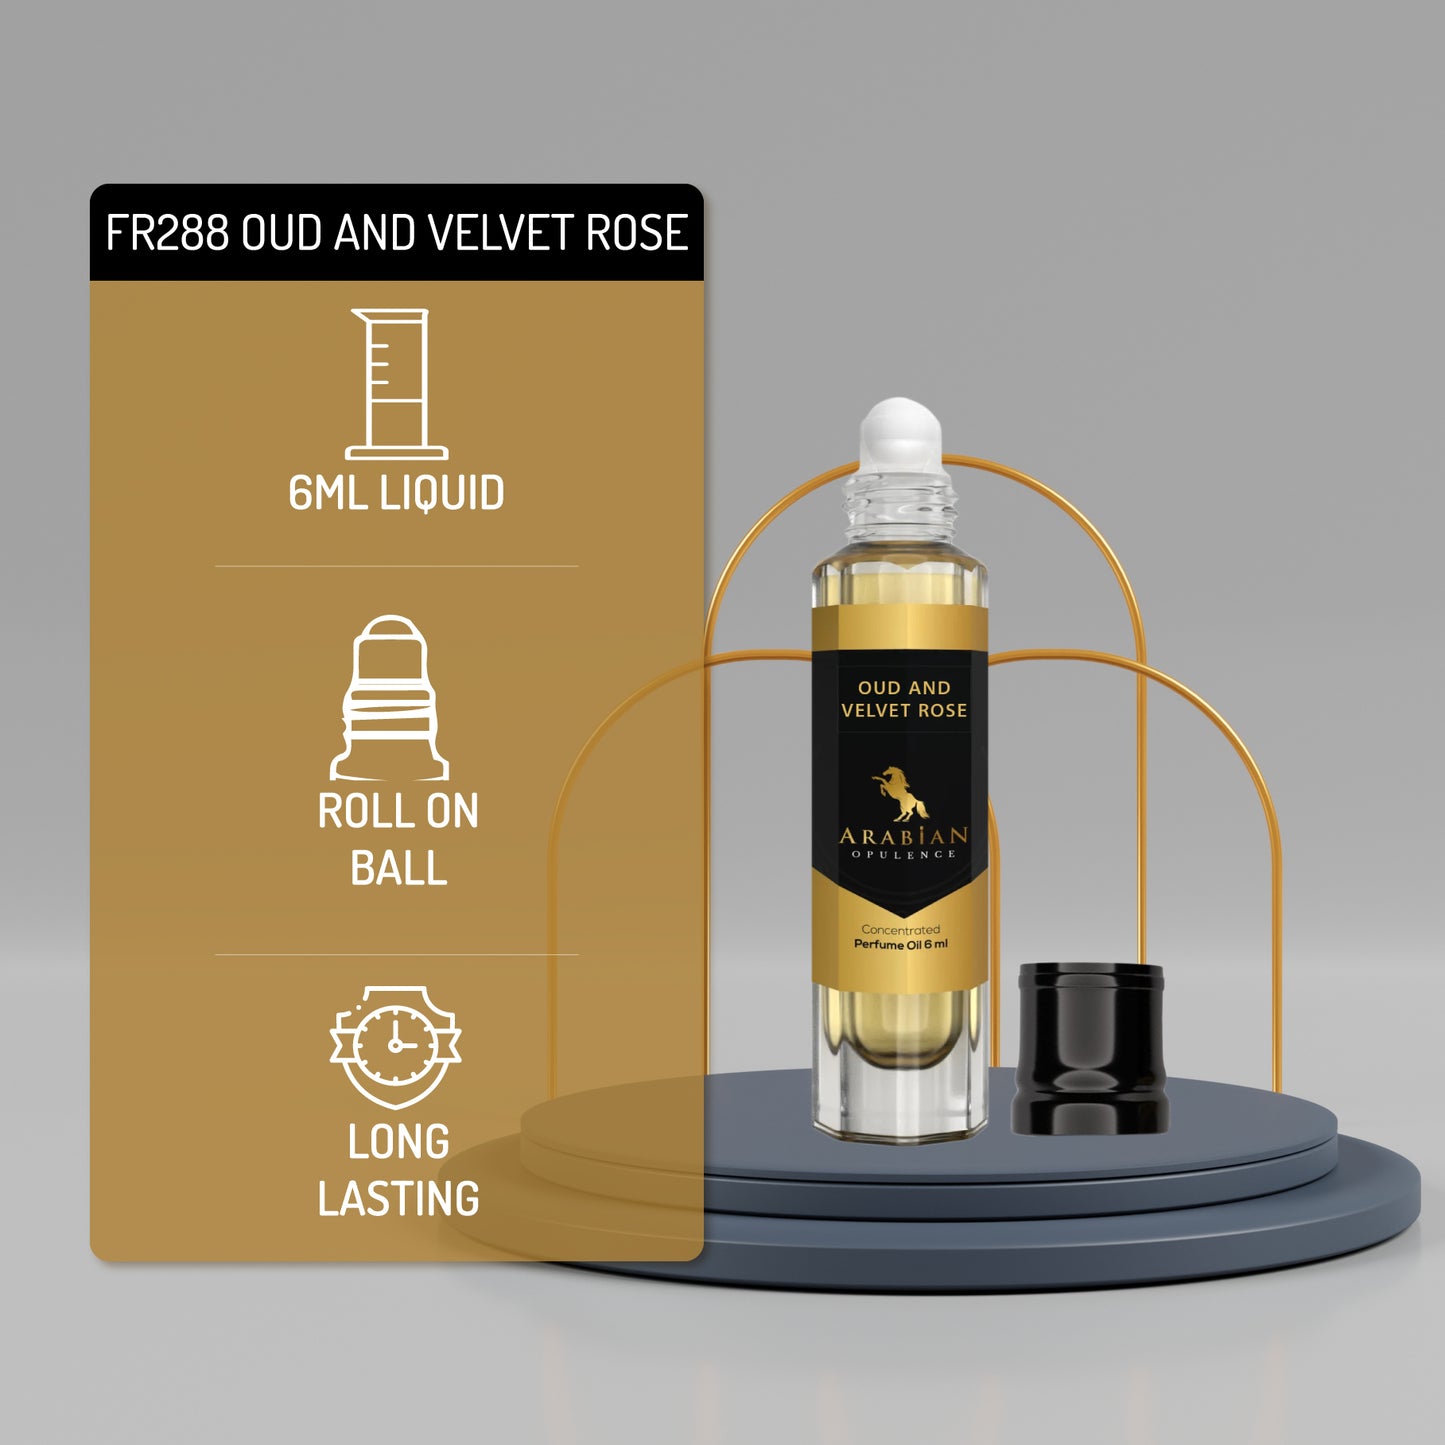 FR288 OUD AND VELVET ROSE - Perfume Body Oil - Alcohol Free